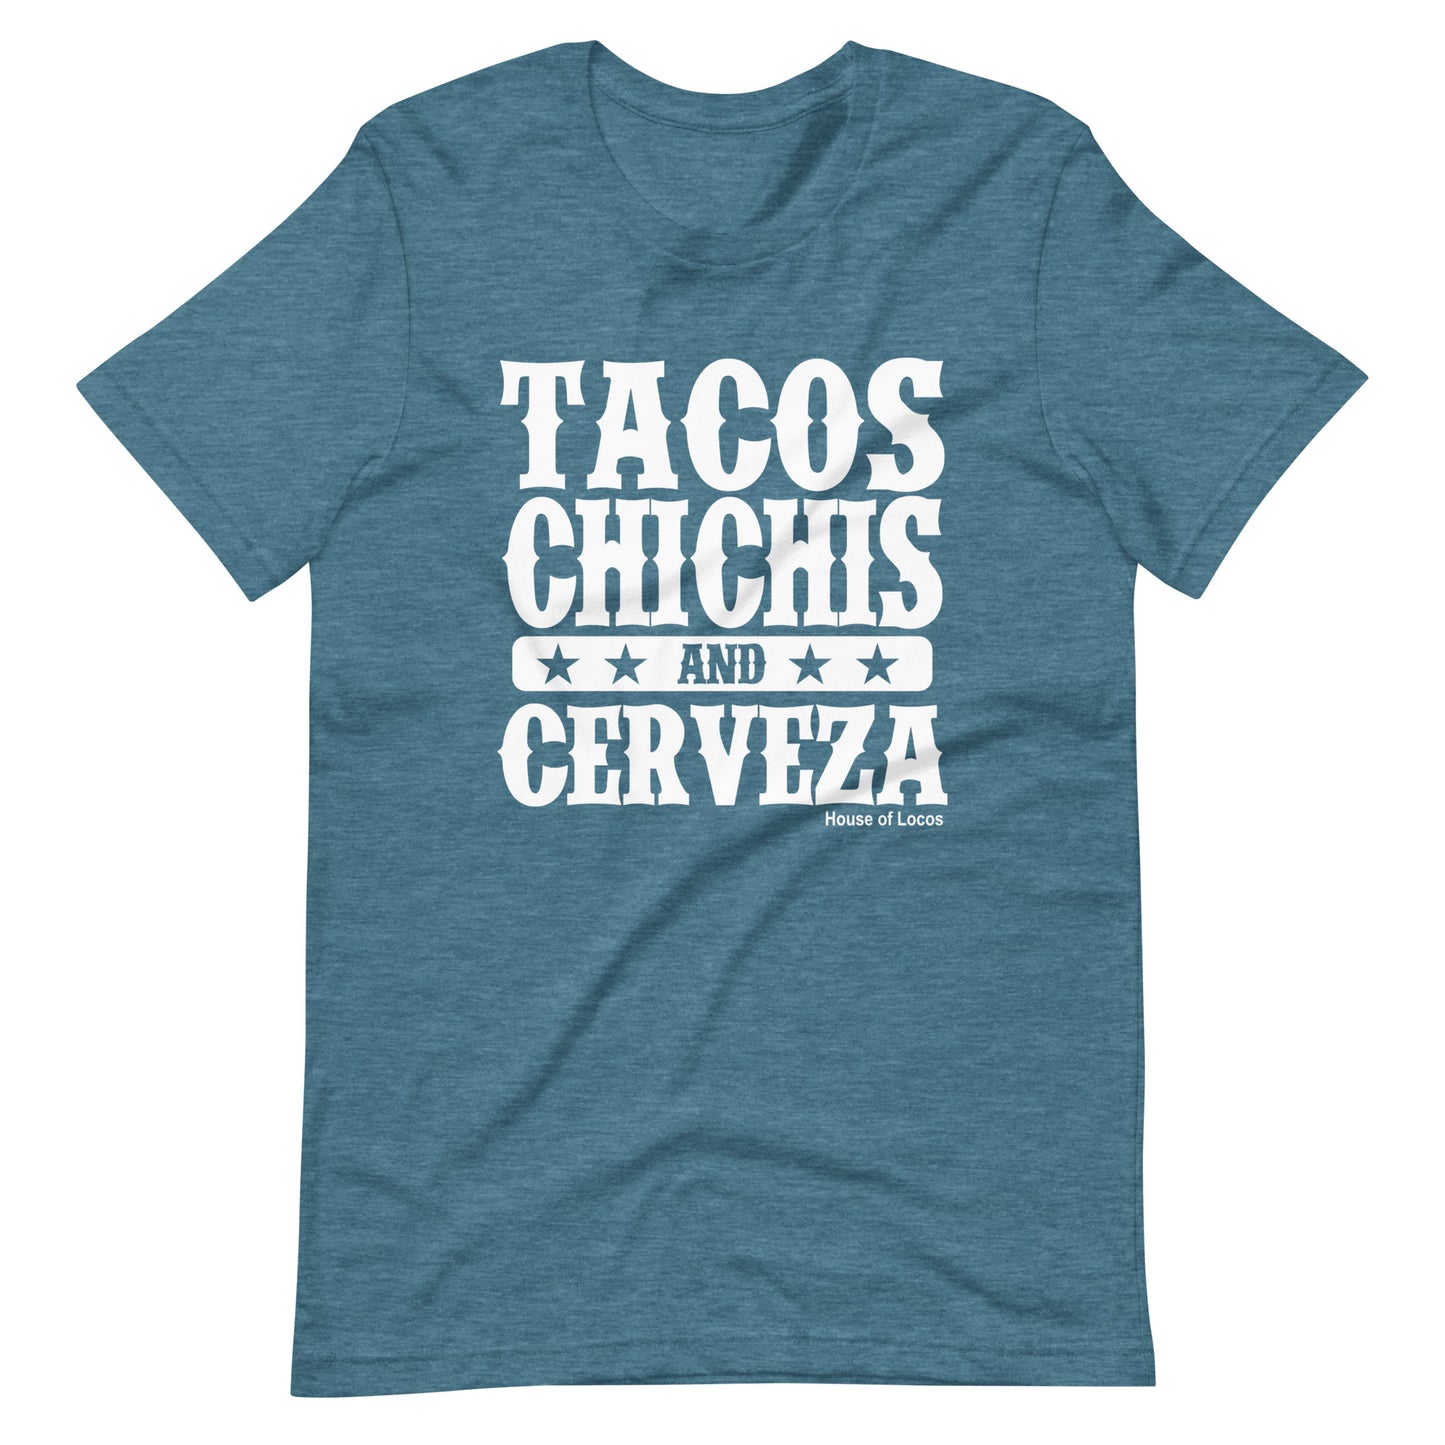 Tacos Chichis And Cerveza T-Shirt Premium Quality